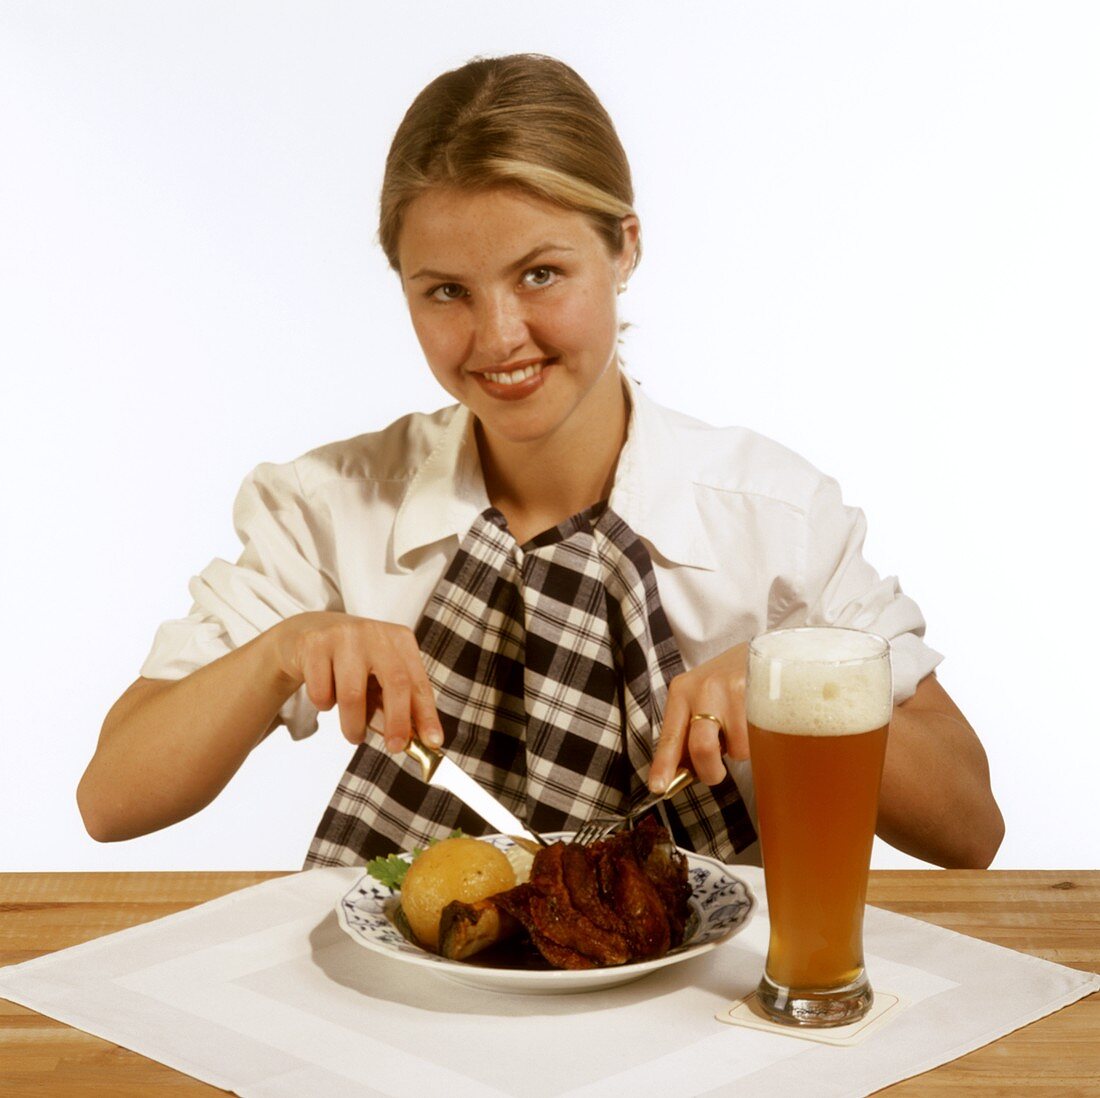 Modell vor Schweinshaxe mit Kloß auf Teller & Glas Weißbier